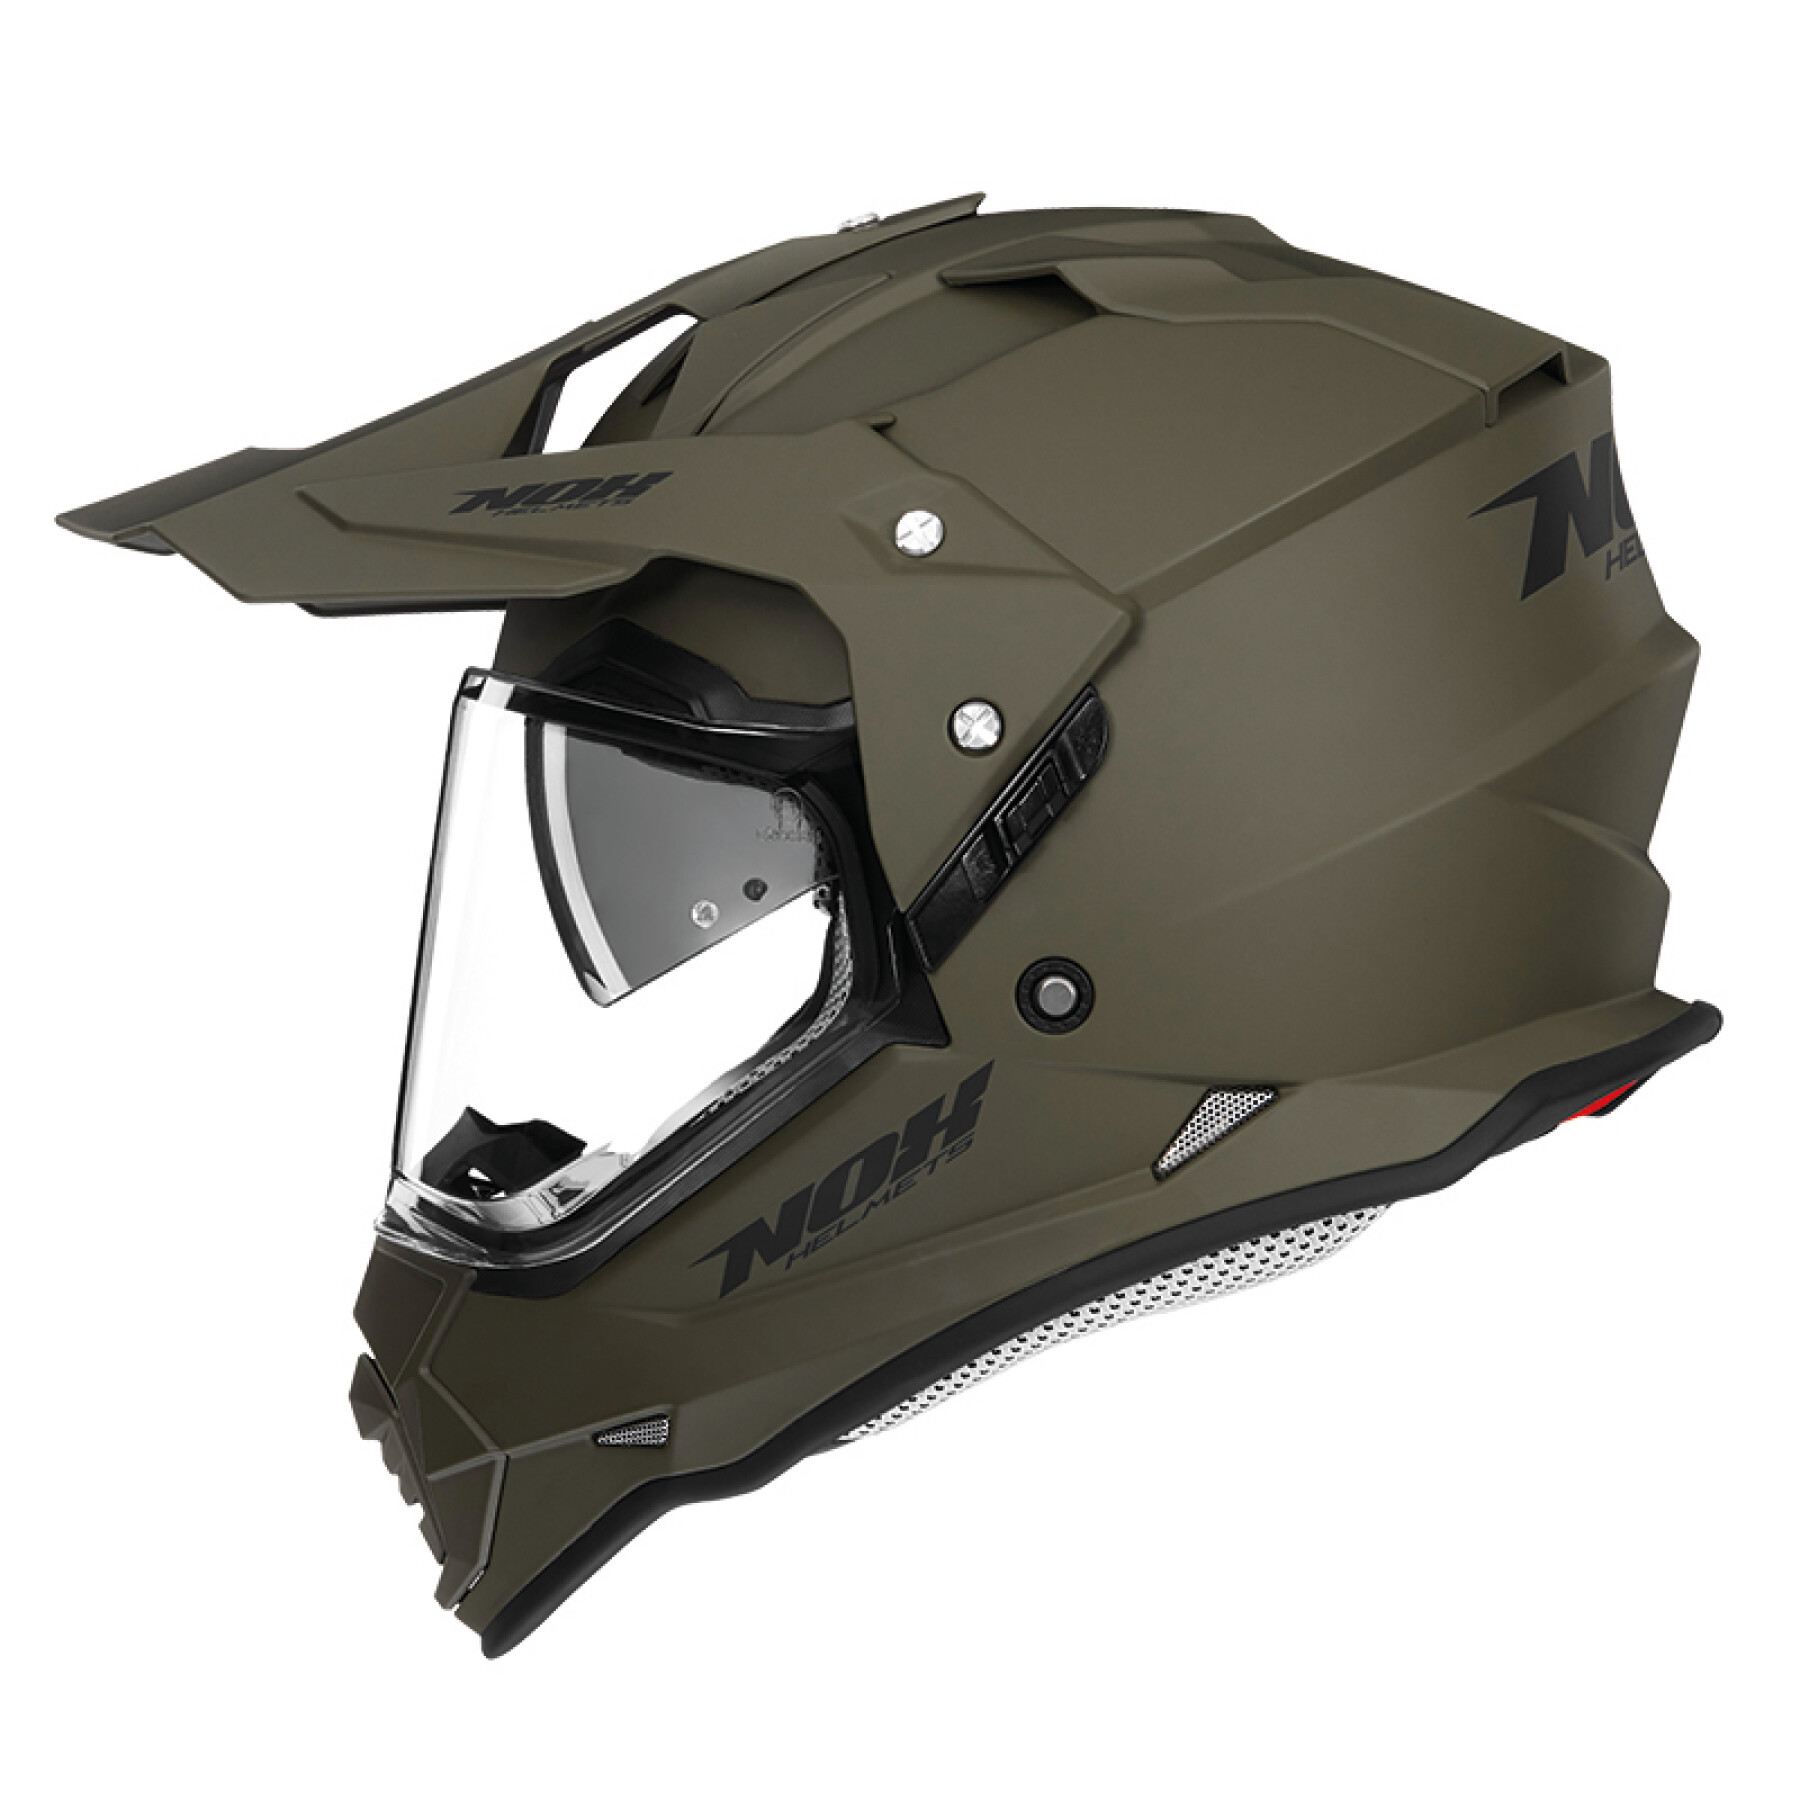 Motorcycle helmet Nox N312